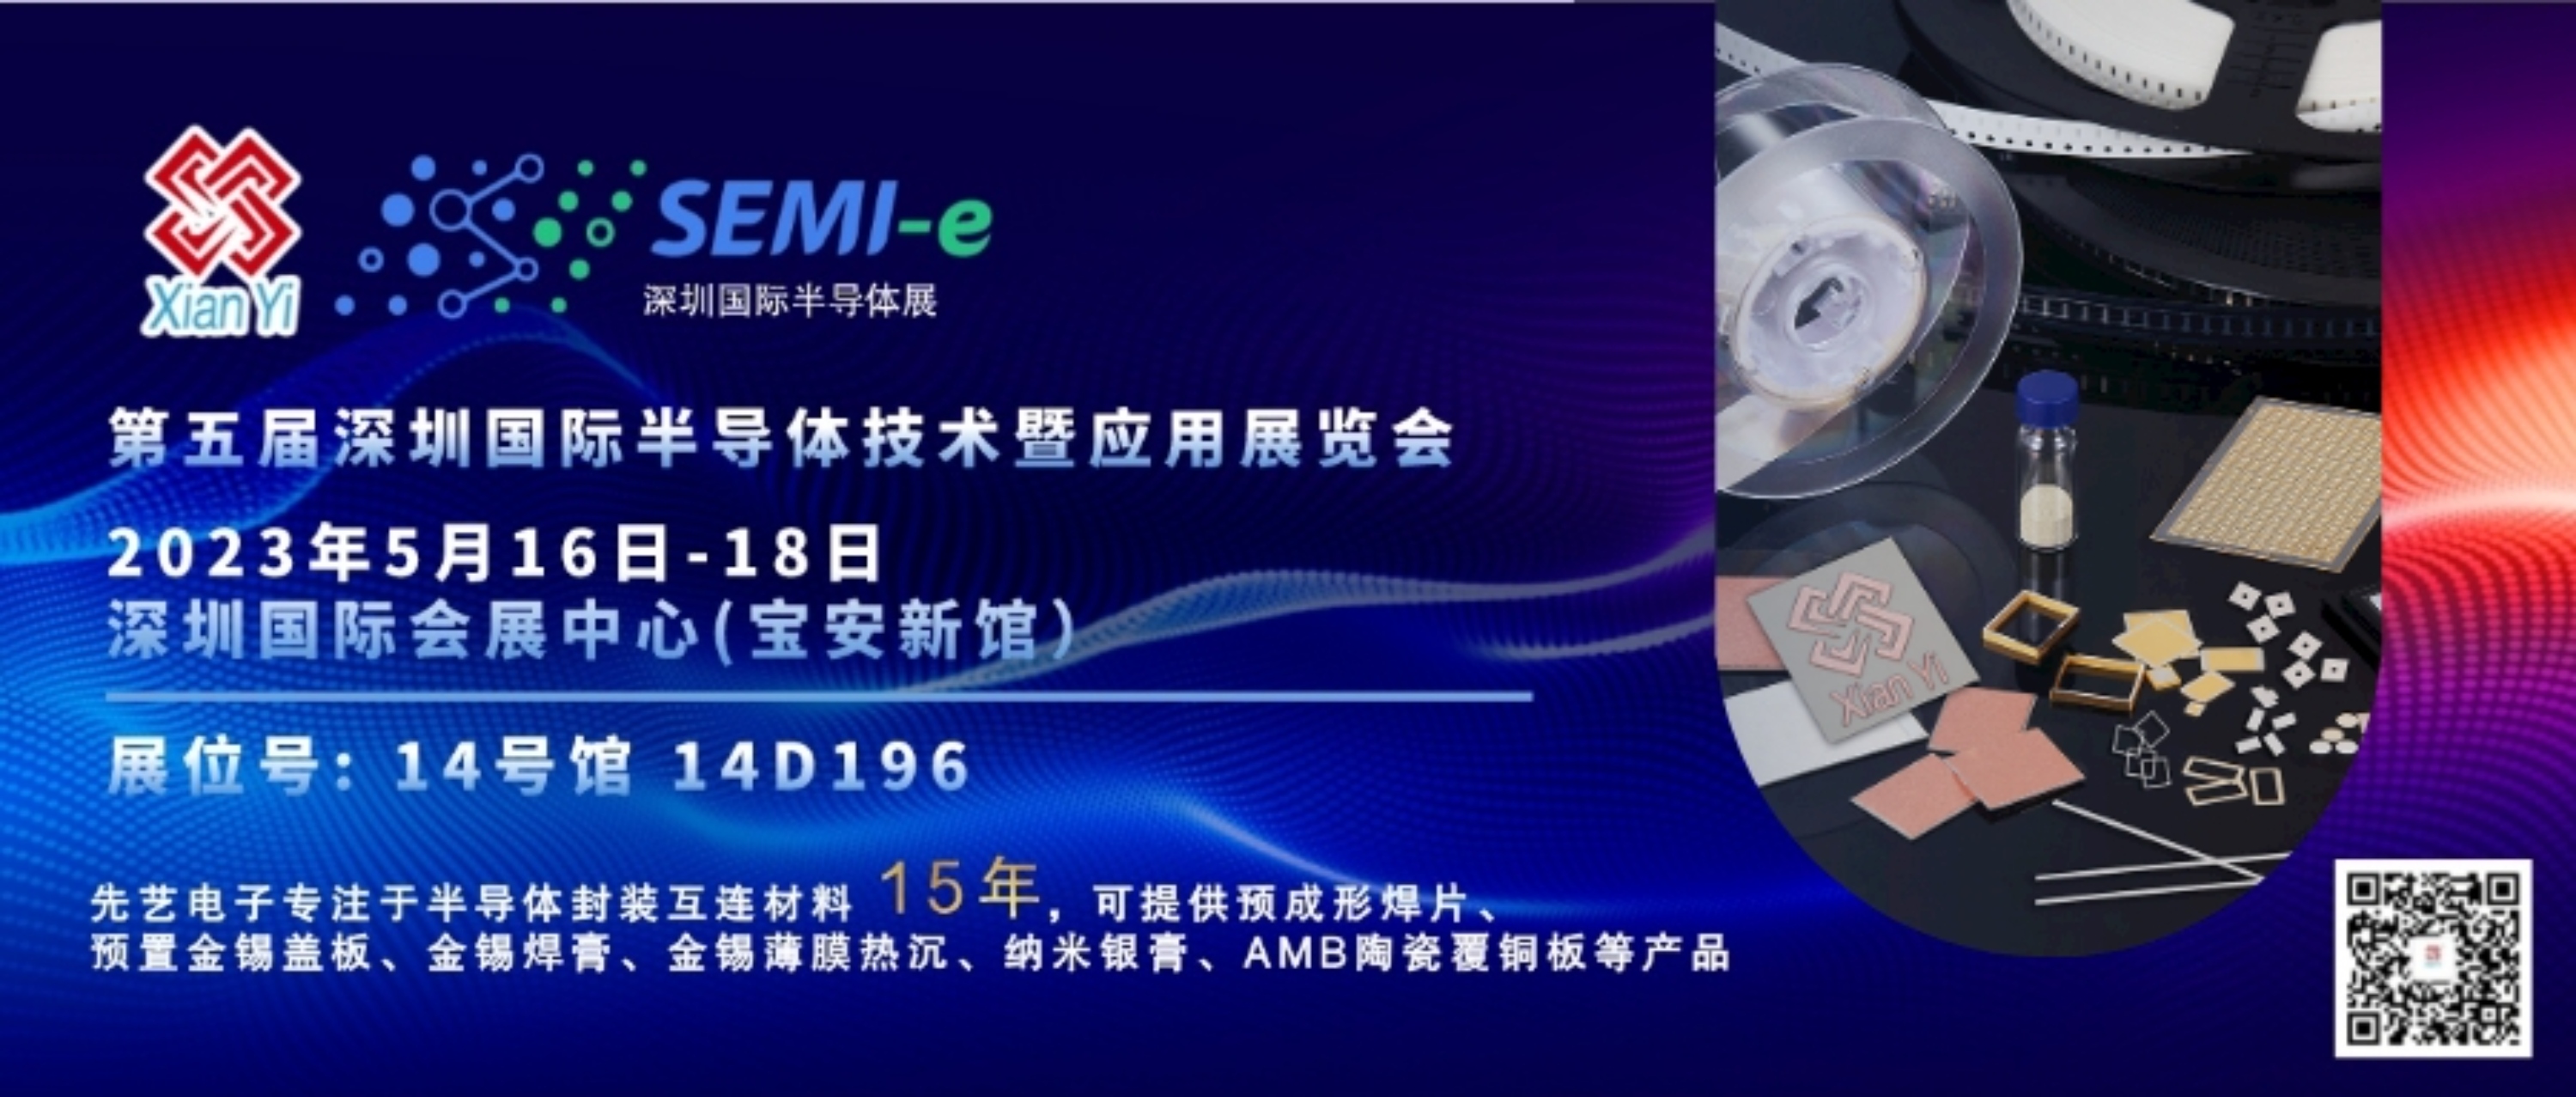 预告丨先艺电子与您相约第五届深圳国际半导体技术暨应用展览会（SEMI-e 2023）